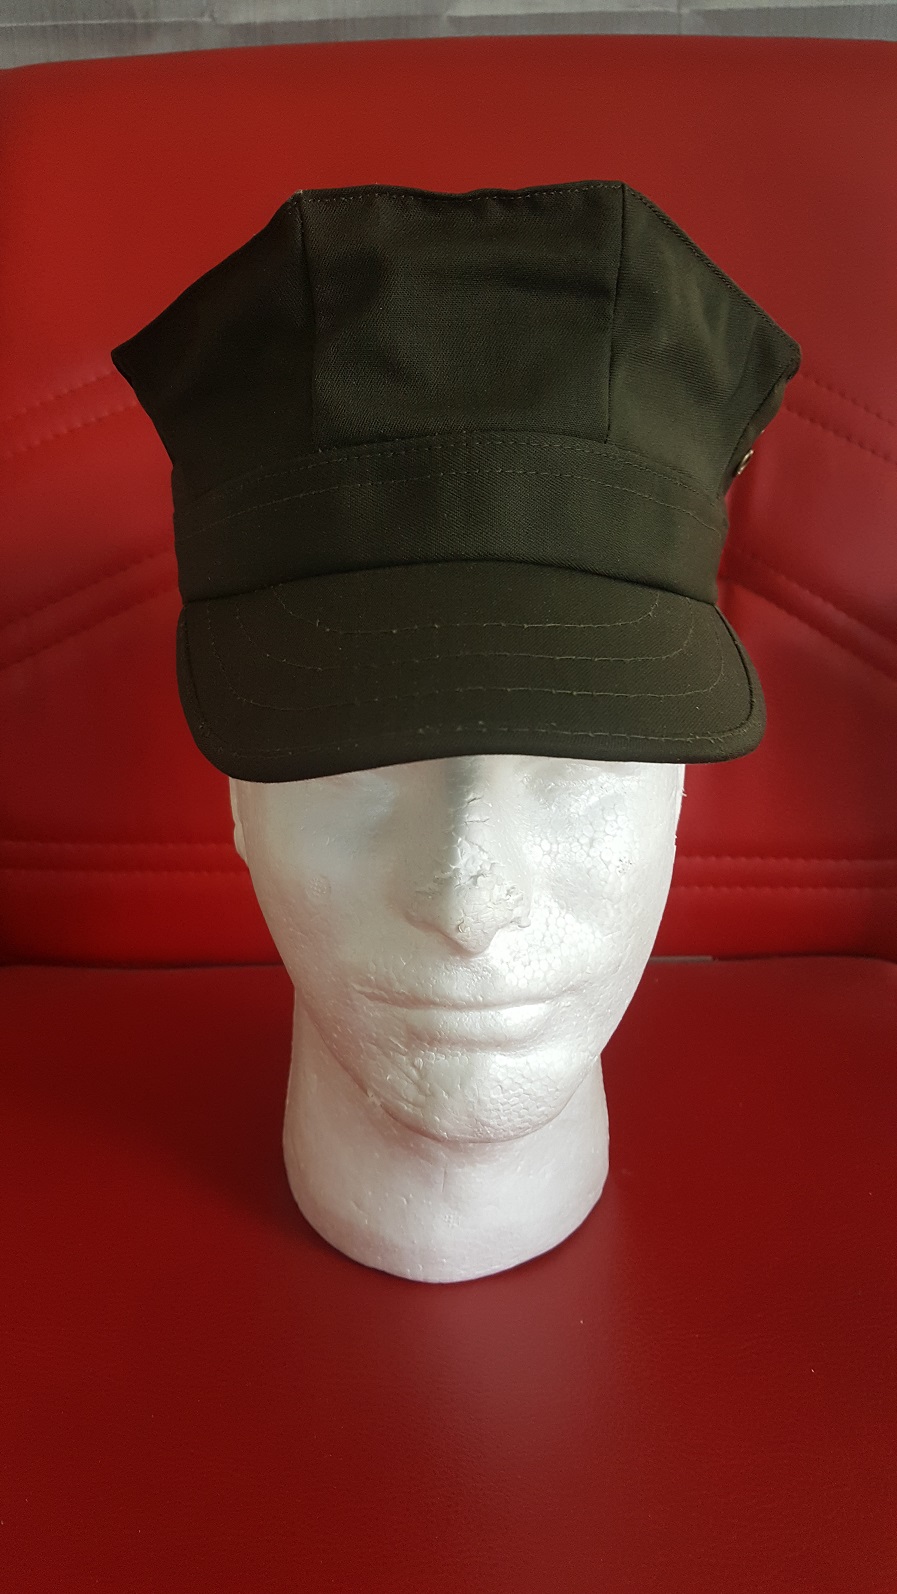 Turkish Army Marine Corps Khaki Hat.